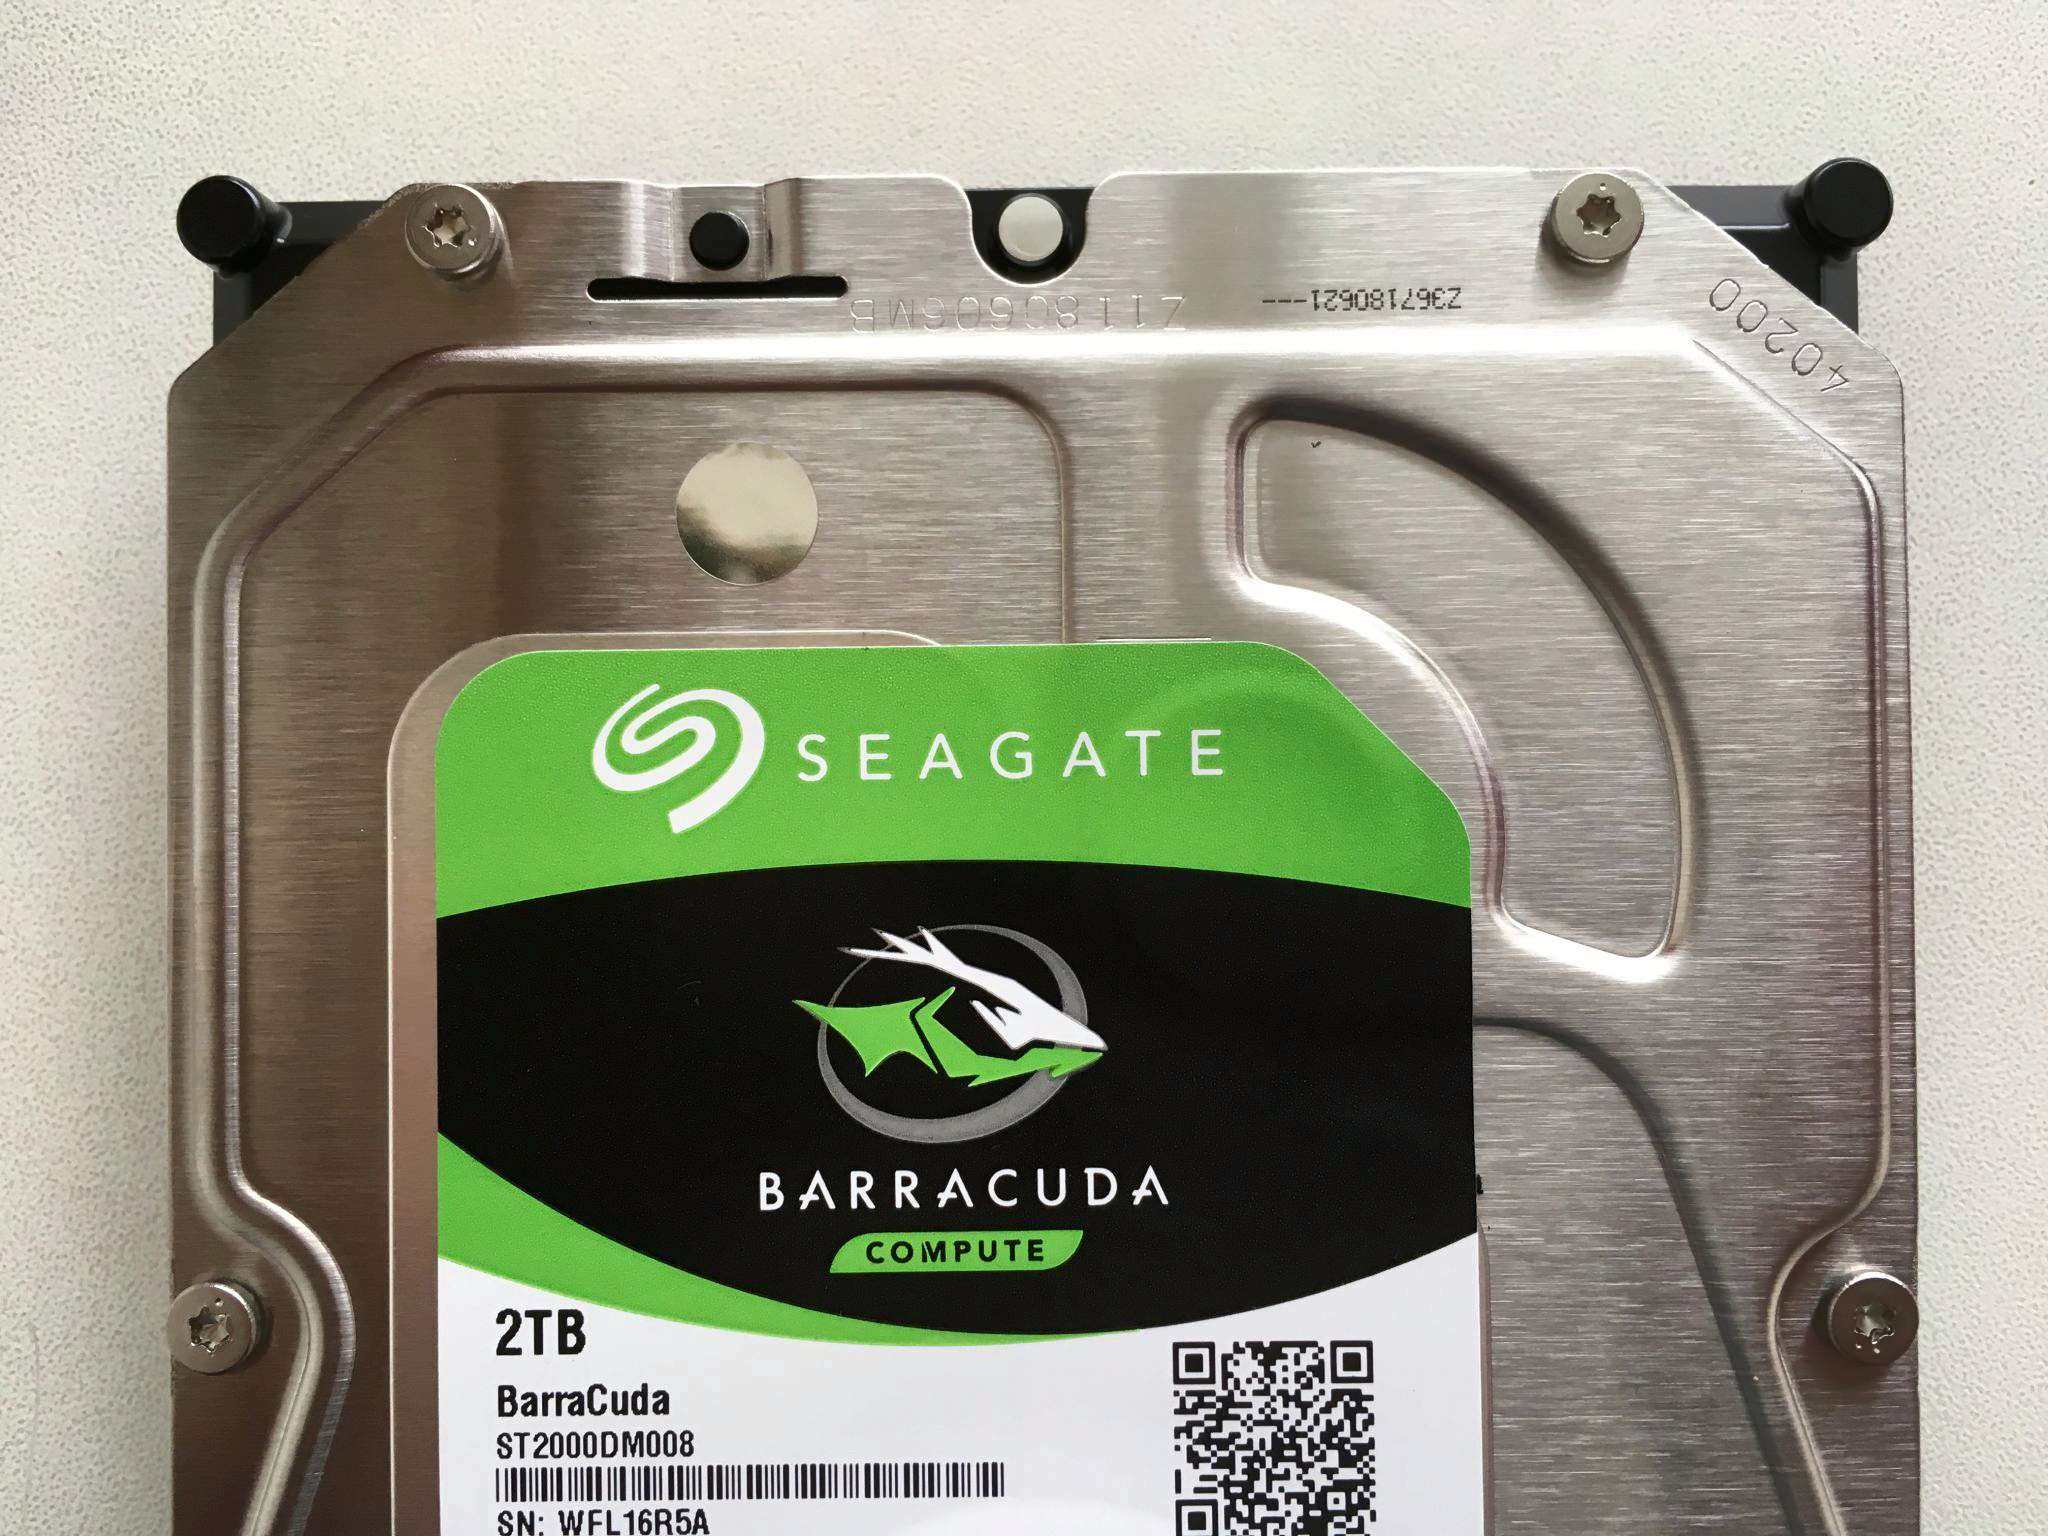 Seagate barracuda st2000dm005